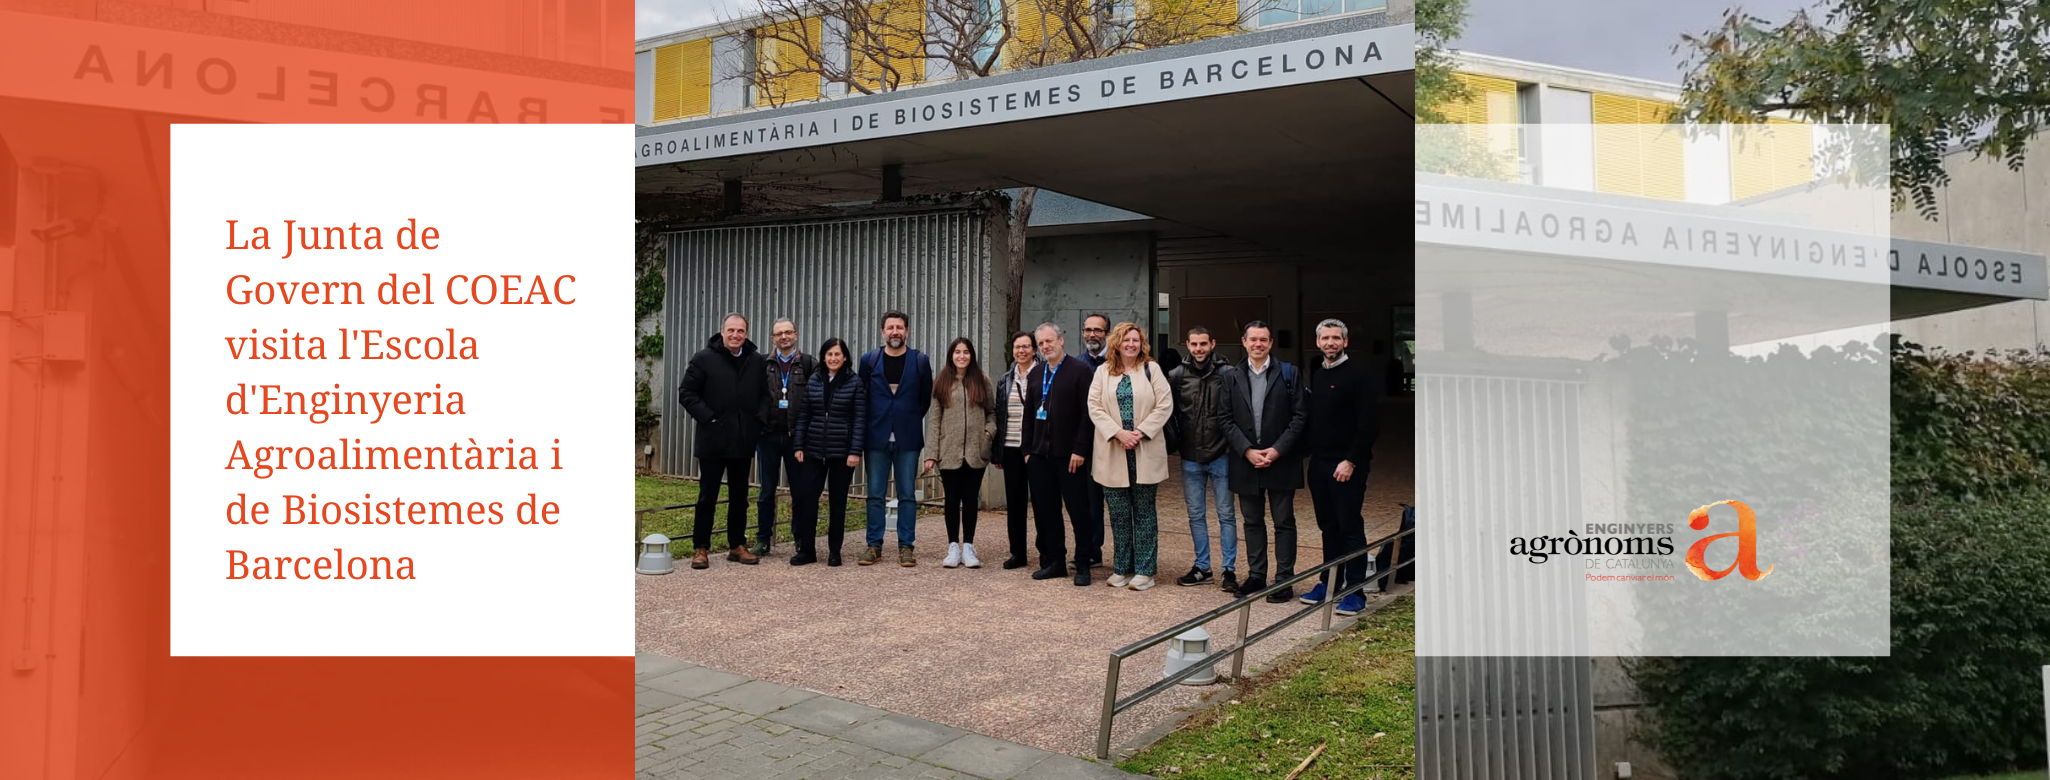 La Junta de Govern del COEAC visita l’Escola d’Enginyeria Agroalimentària i de Biosistemes de Barcelona